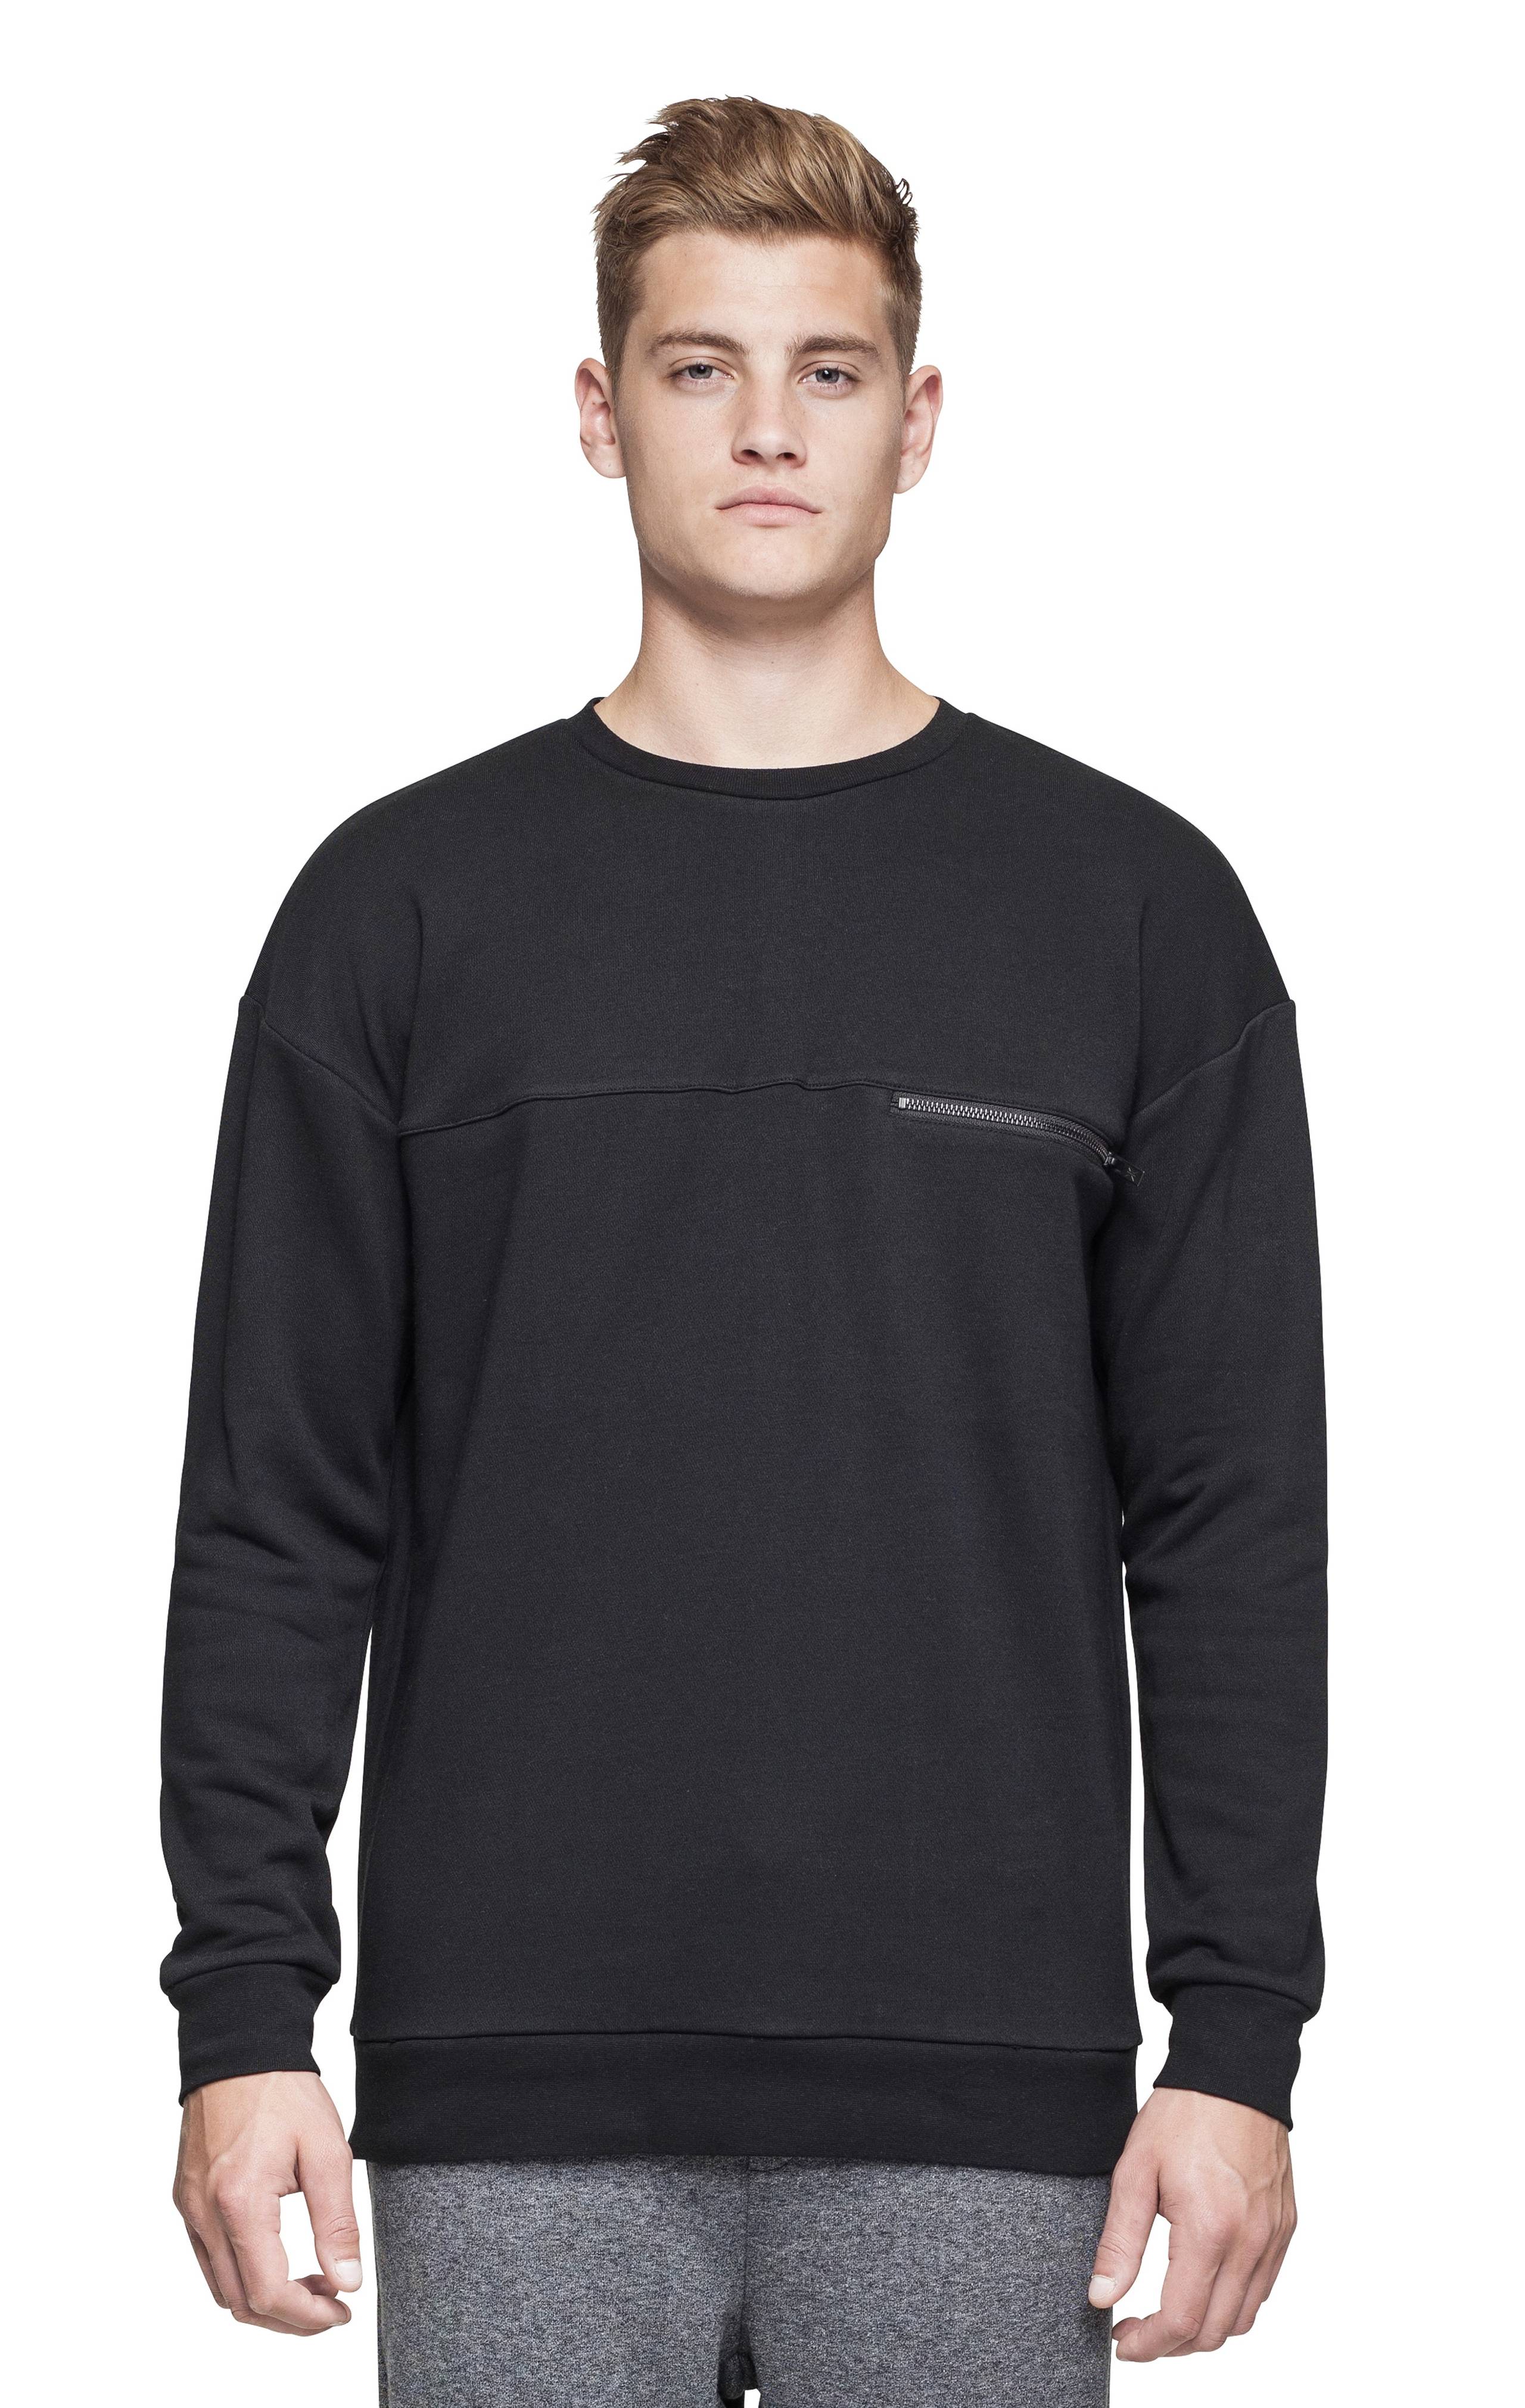 Onepiece Plunge Sweater Black - 3